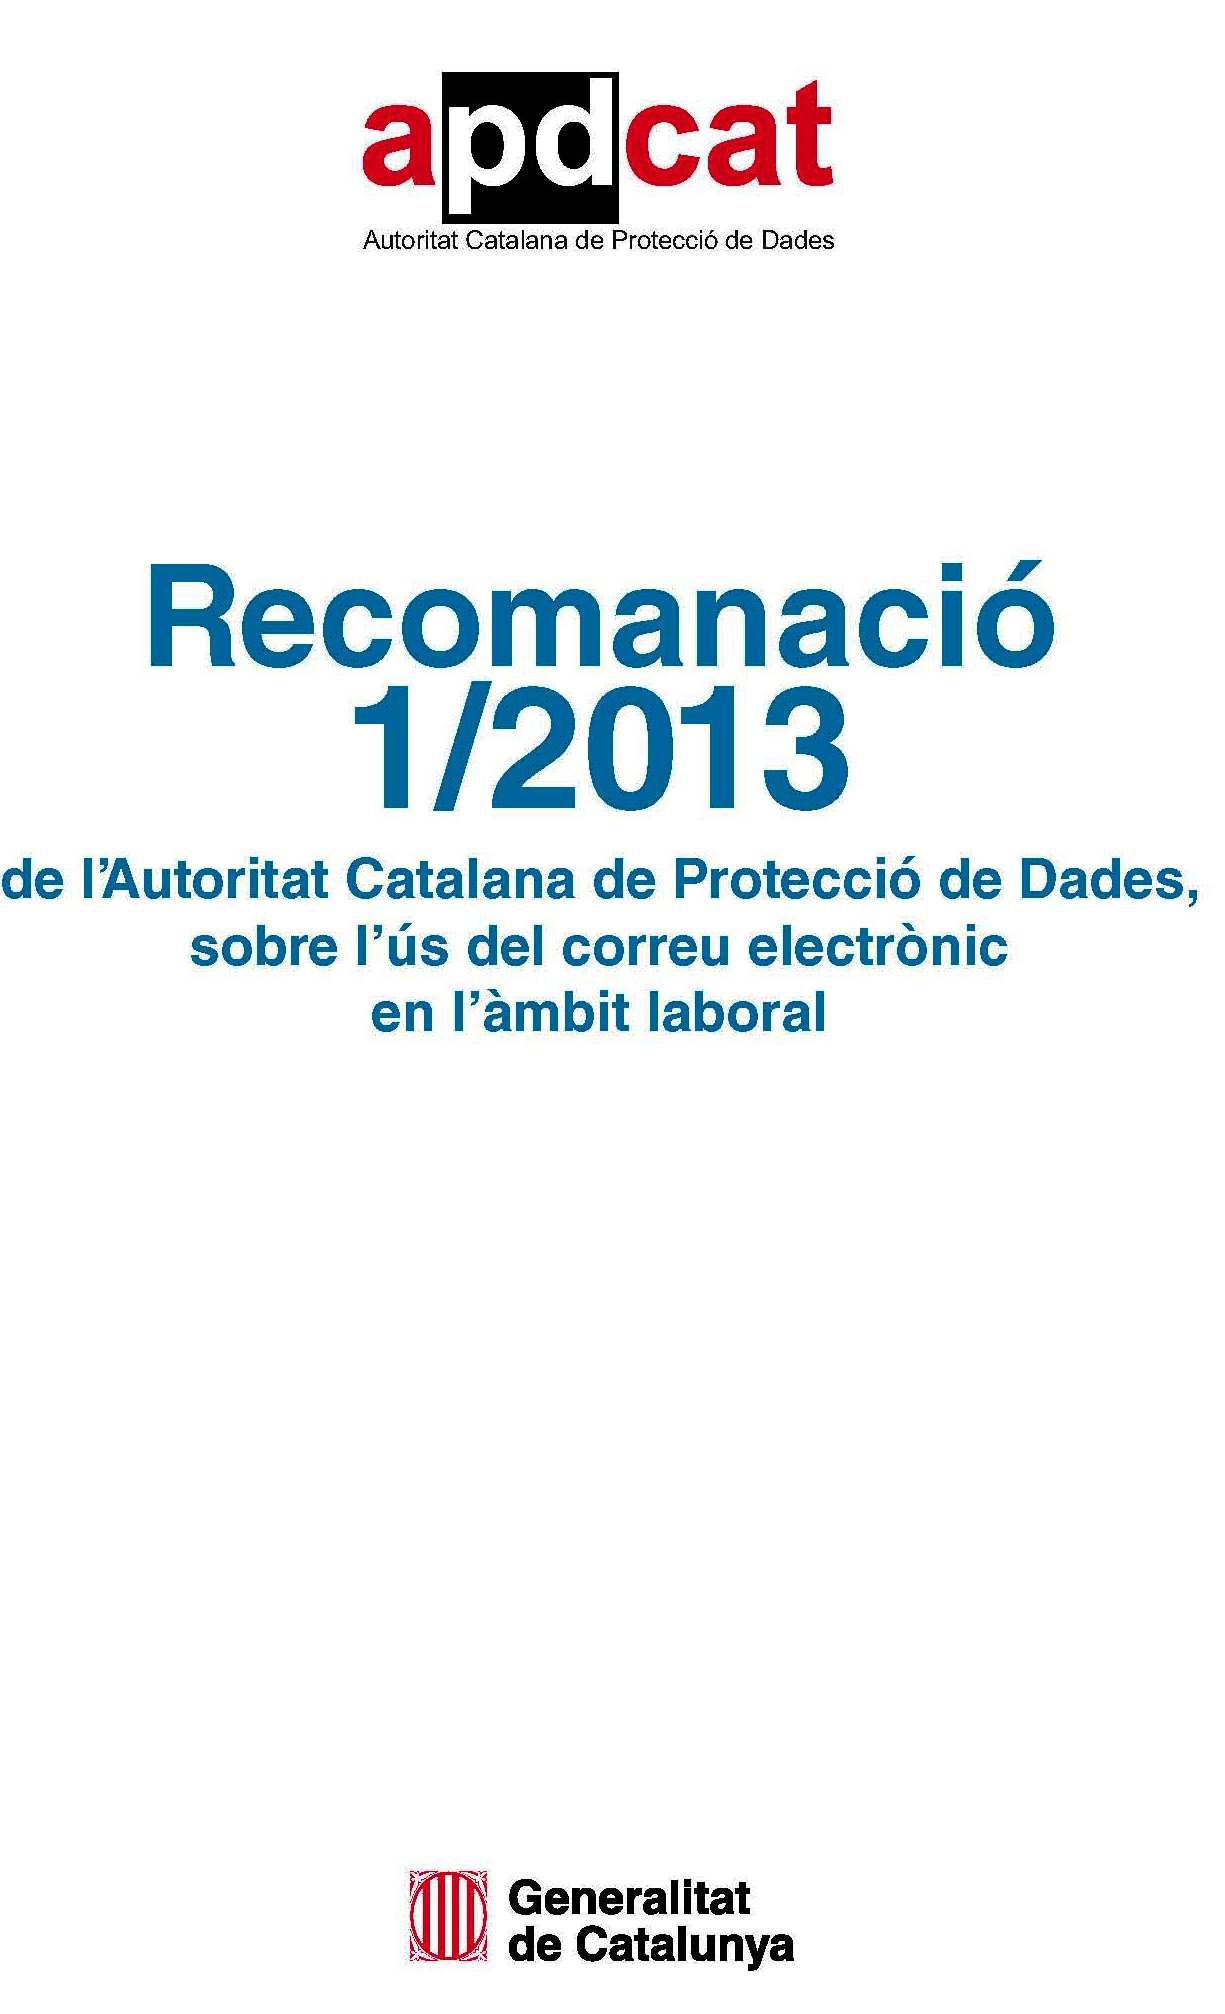 Recomanació 1/2013 sobre l'ús del correu electrònic a l'àmbit laboral